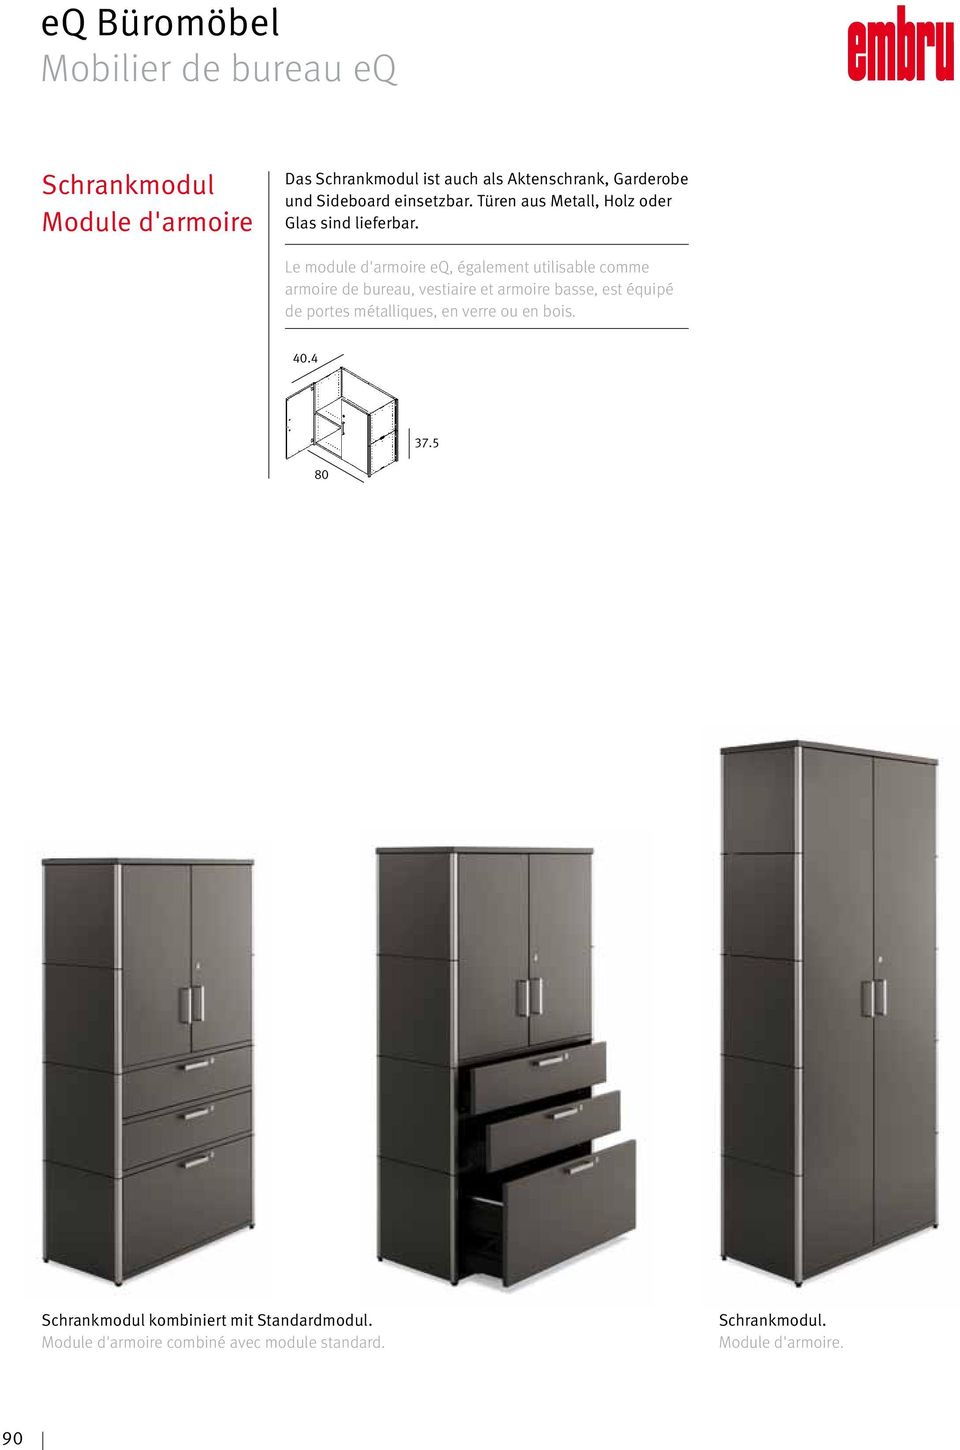 Le module d'armoire eq, également utilisable comme armoire de bureau, vestiaire et armoire basse, est équipé de